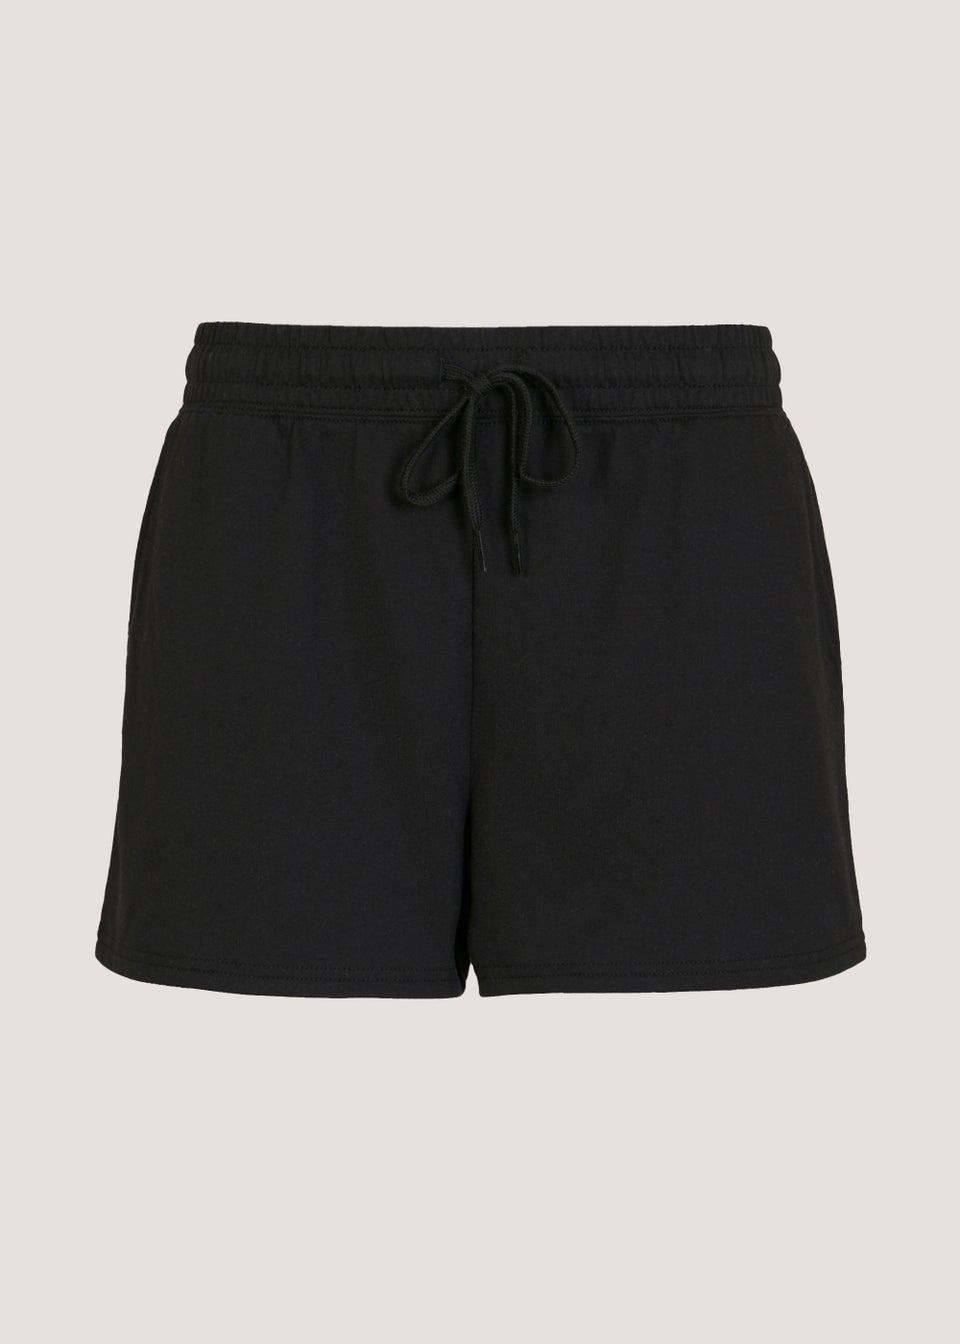 Black Tie Waisted Shorts - Matalan